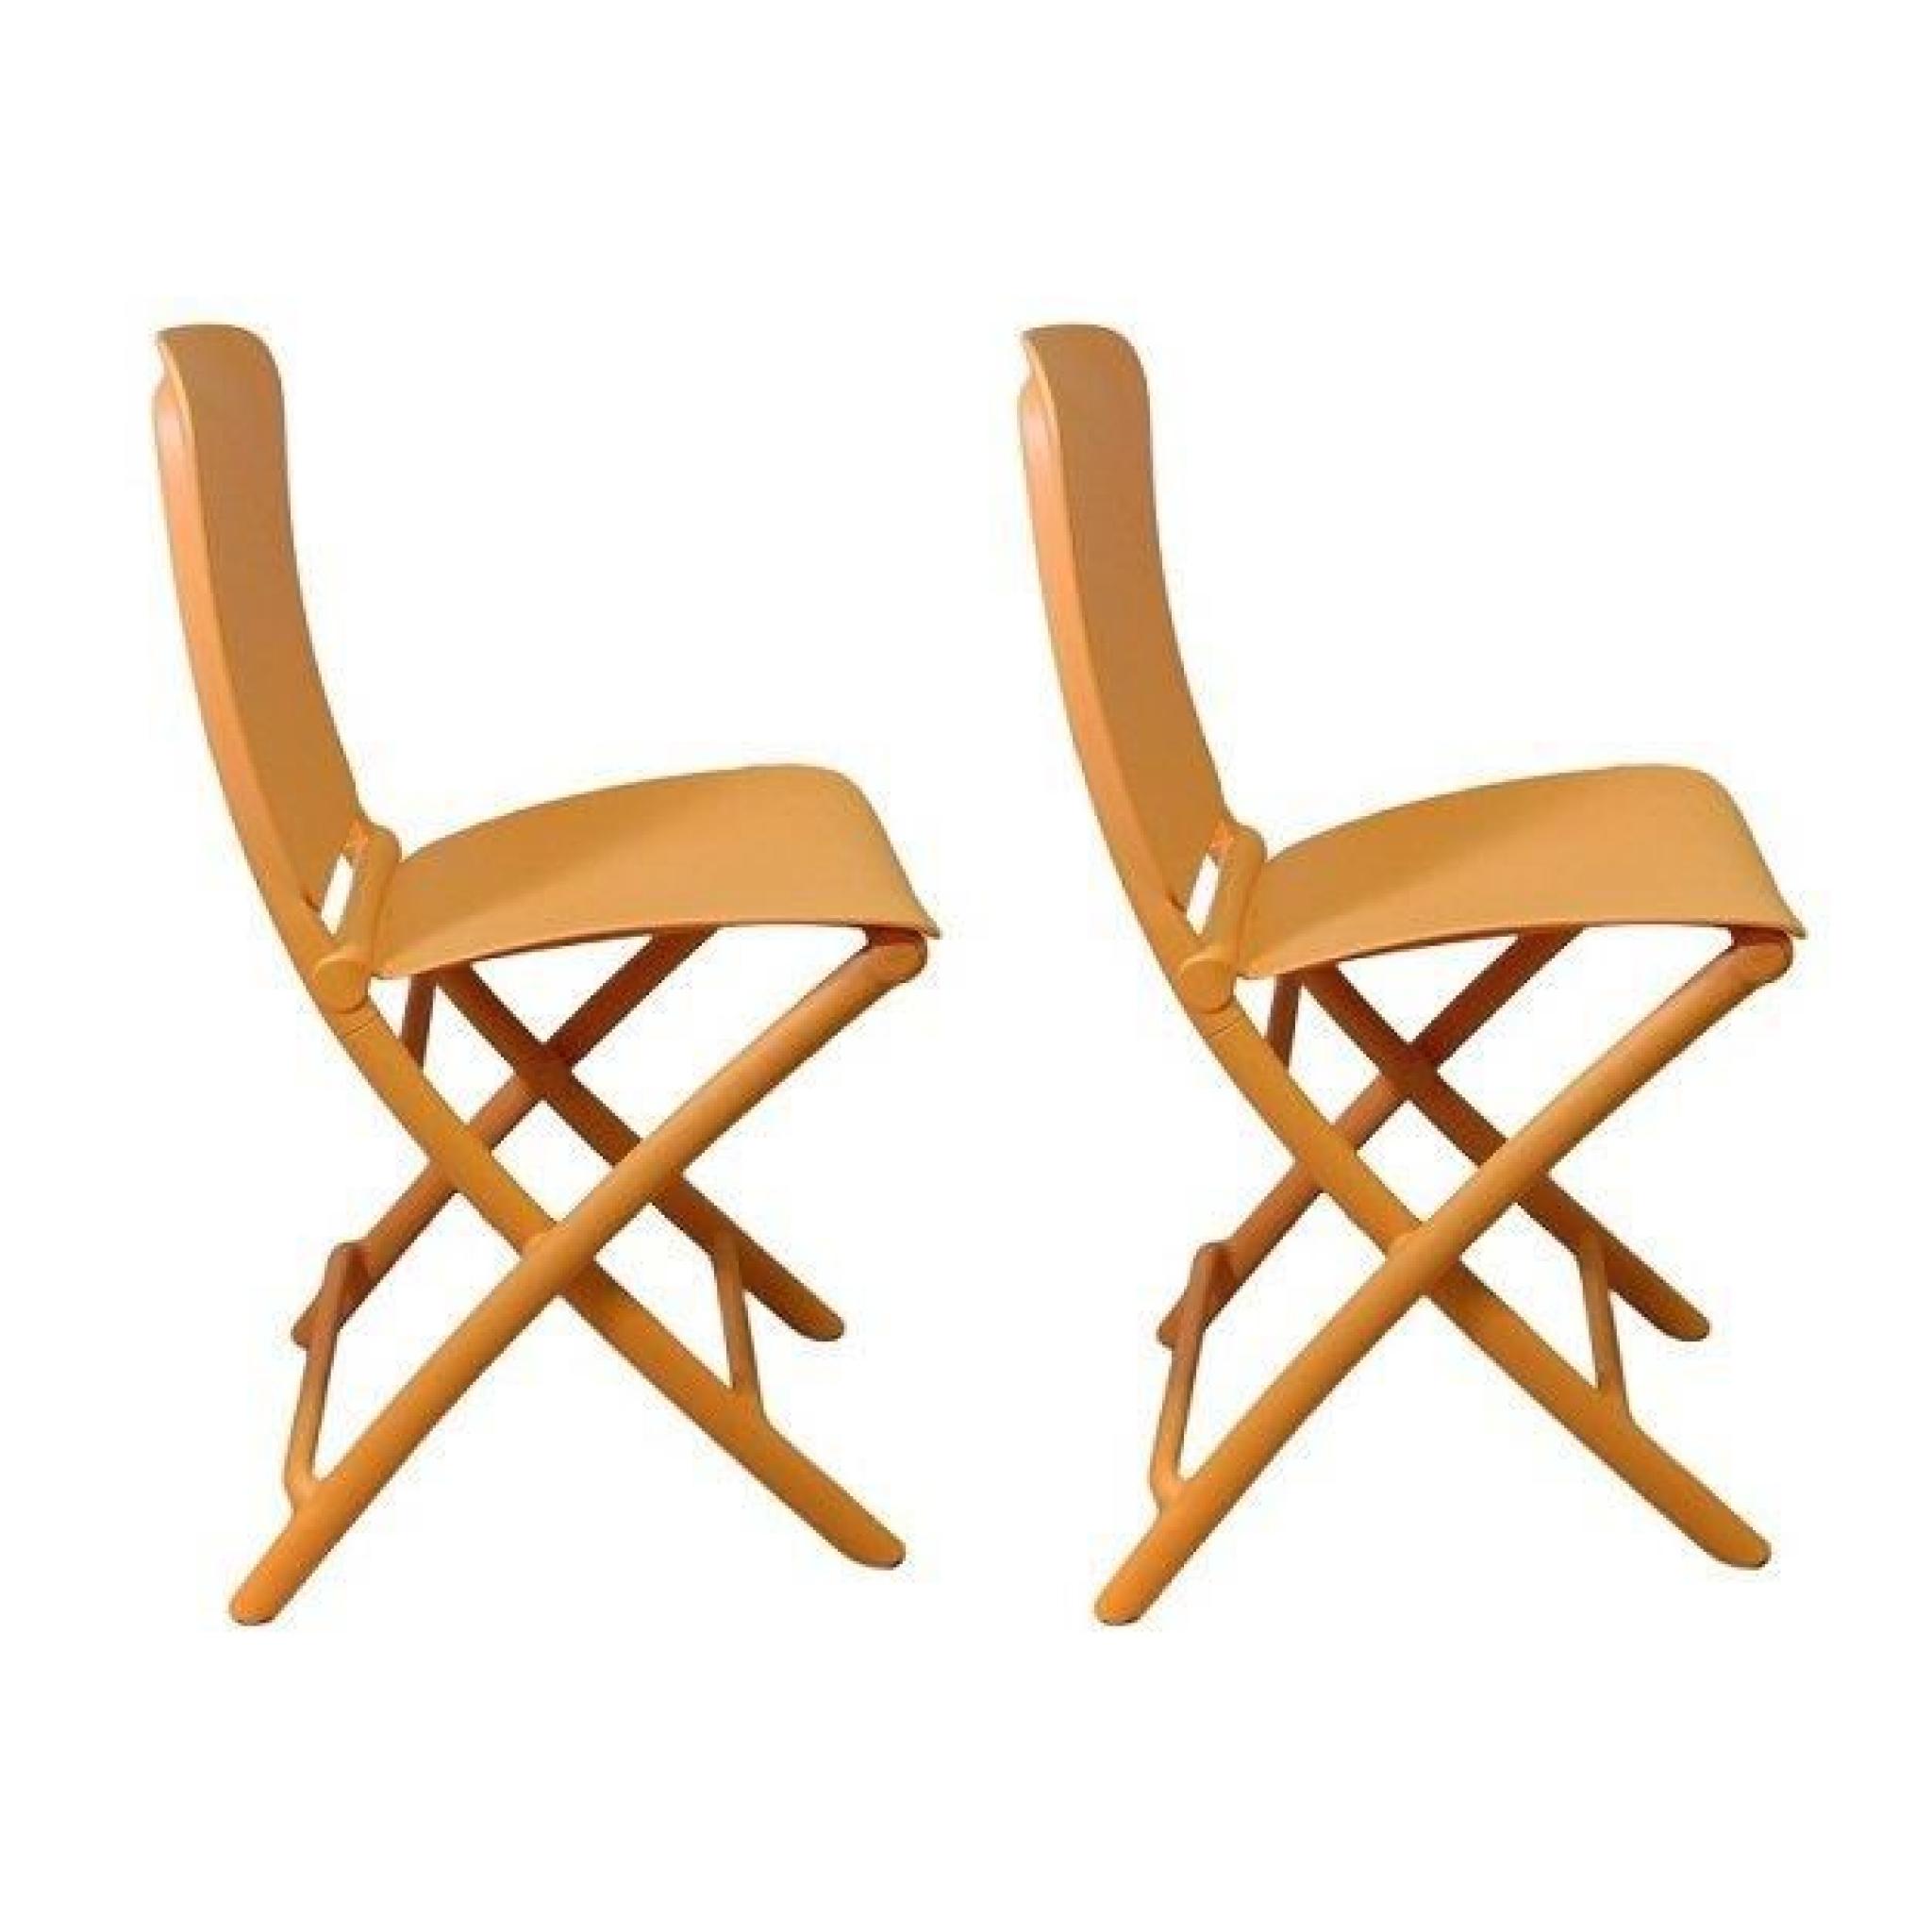 ZAK est une série de chaises colorées pliantes et rangées en un clin d'oeil pour un gain de place maximal.  Un design innovant po...